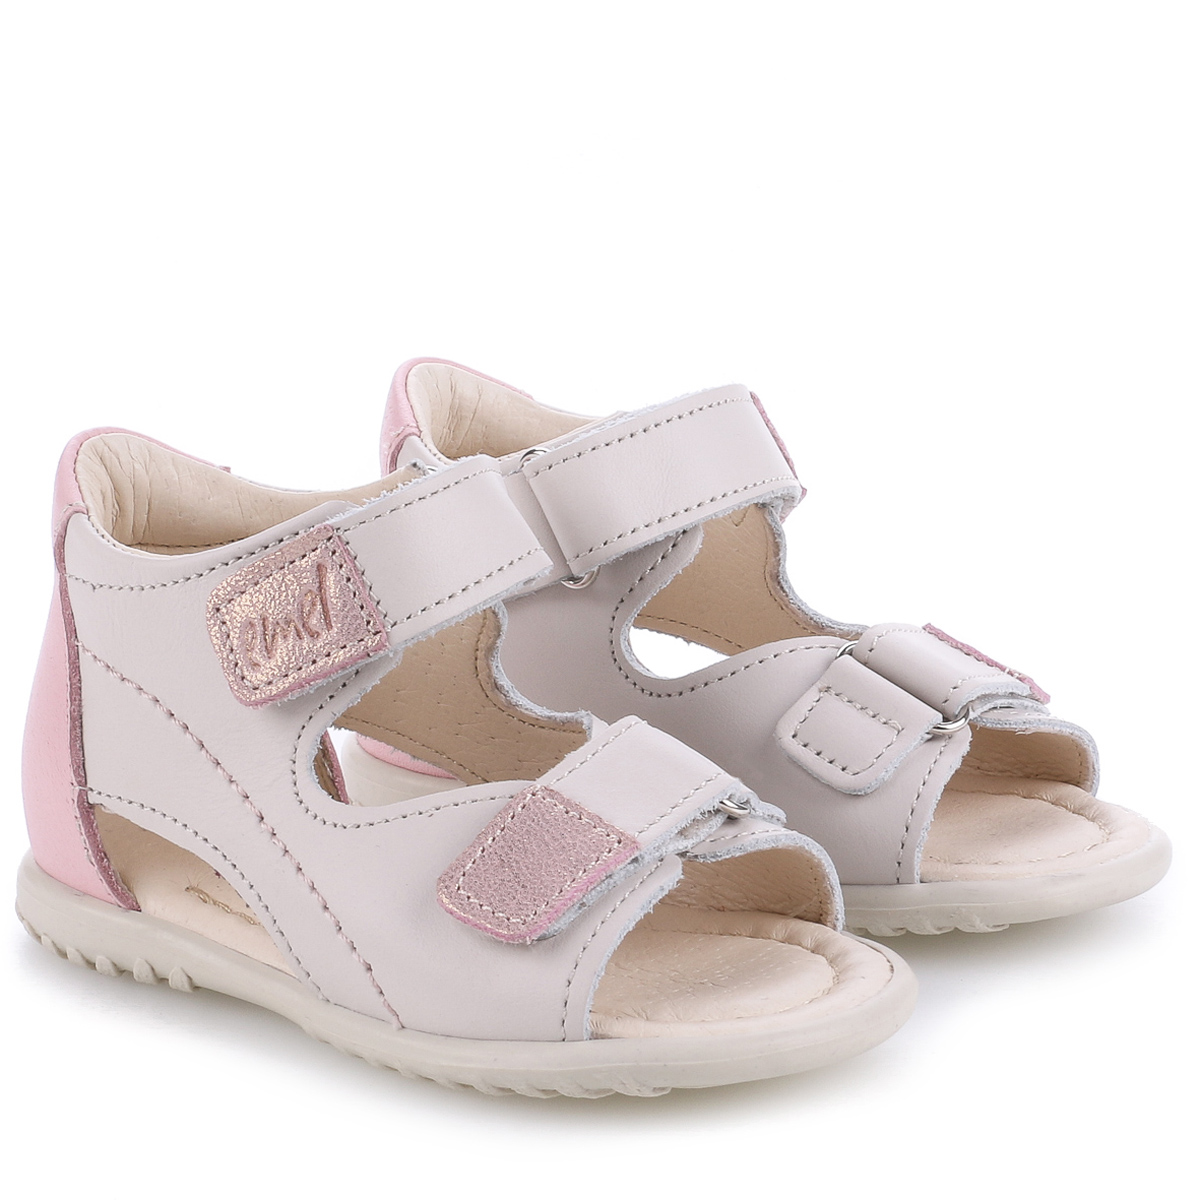 Malibu Roczki® biało-różowe sandały dziecięce ze skóry naturalnej - ES 2435-28 zdjęcie 1